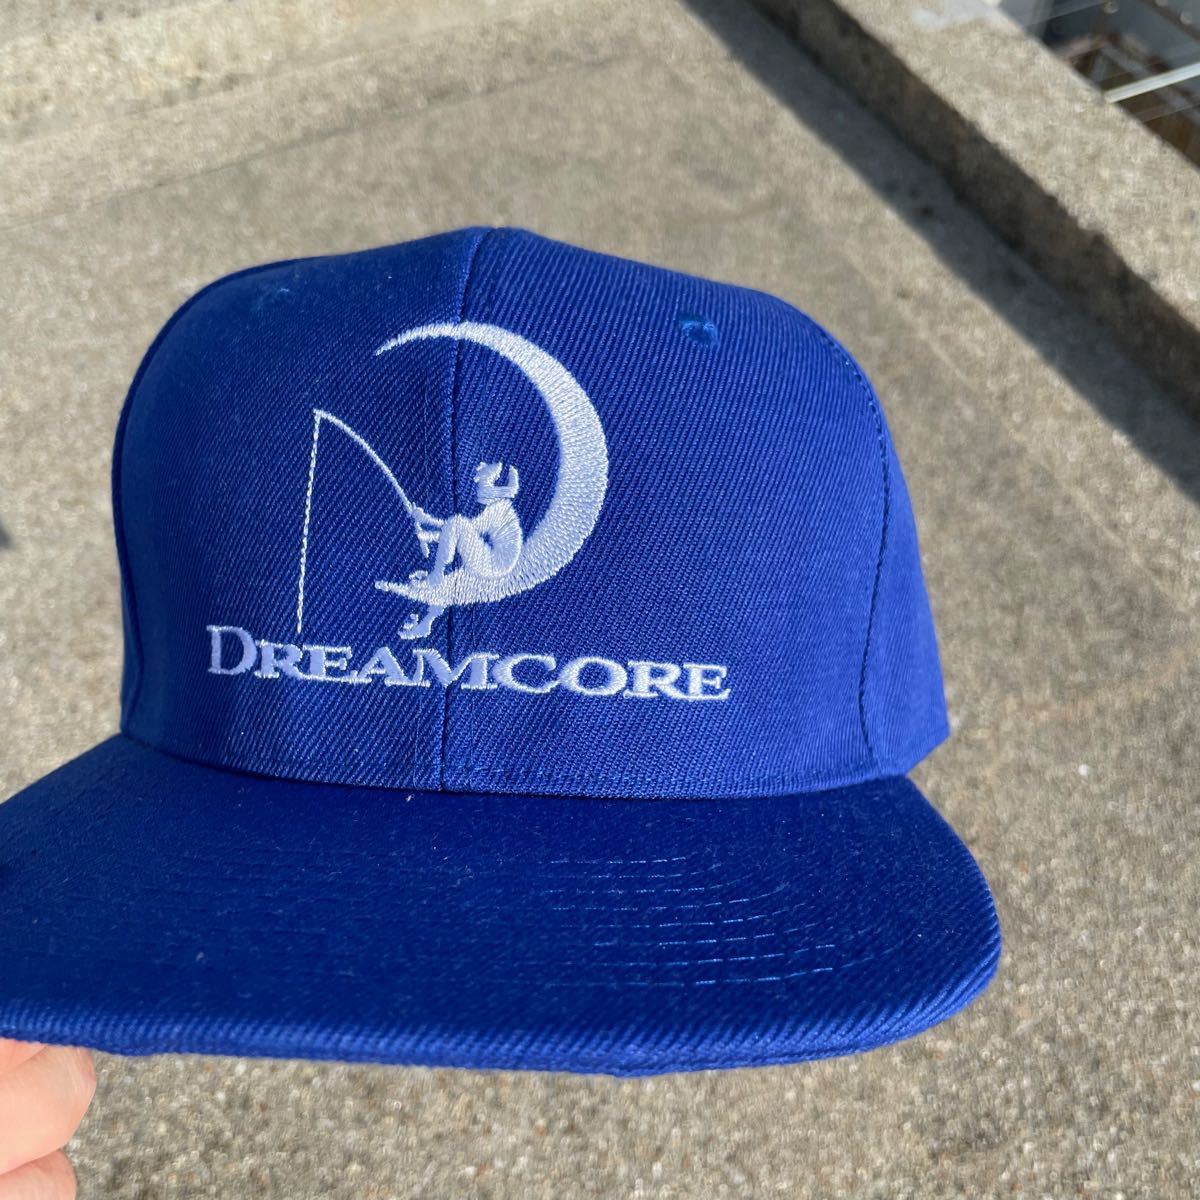 2021年製 Dreamcore キャップ 佐野玲於 Frank Ocean着用 dr-body.jp